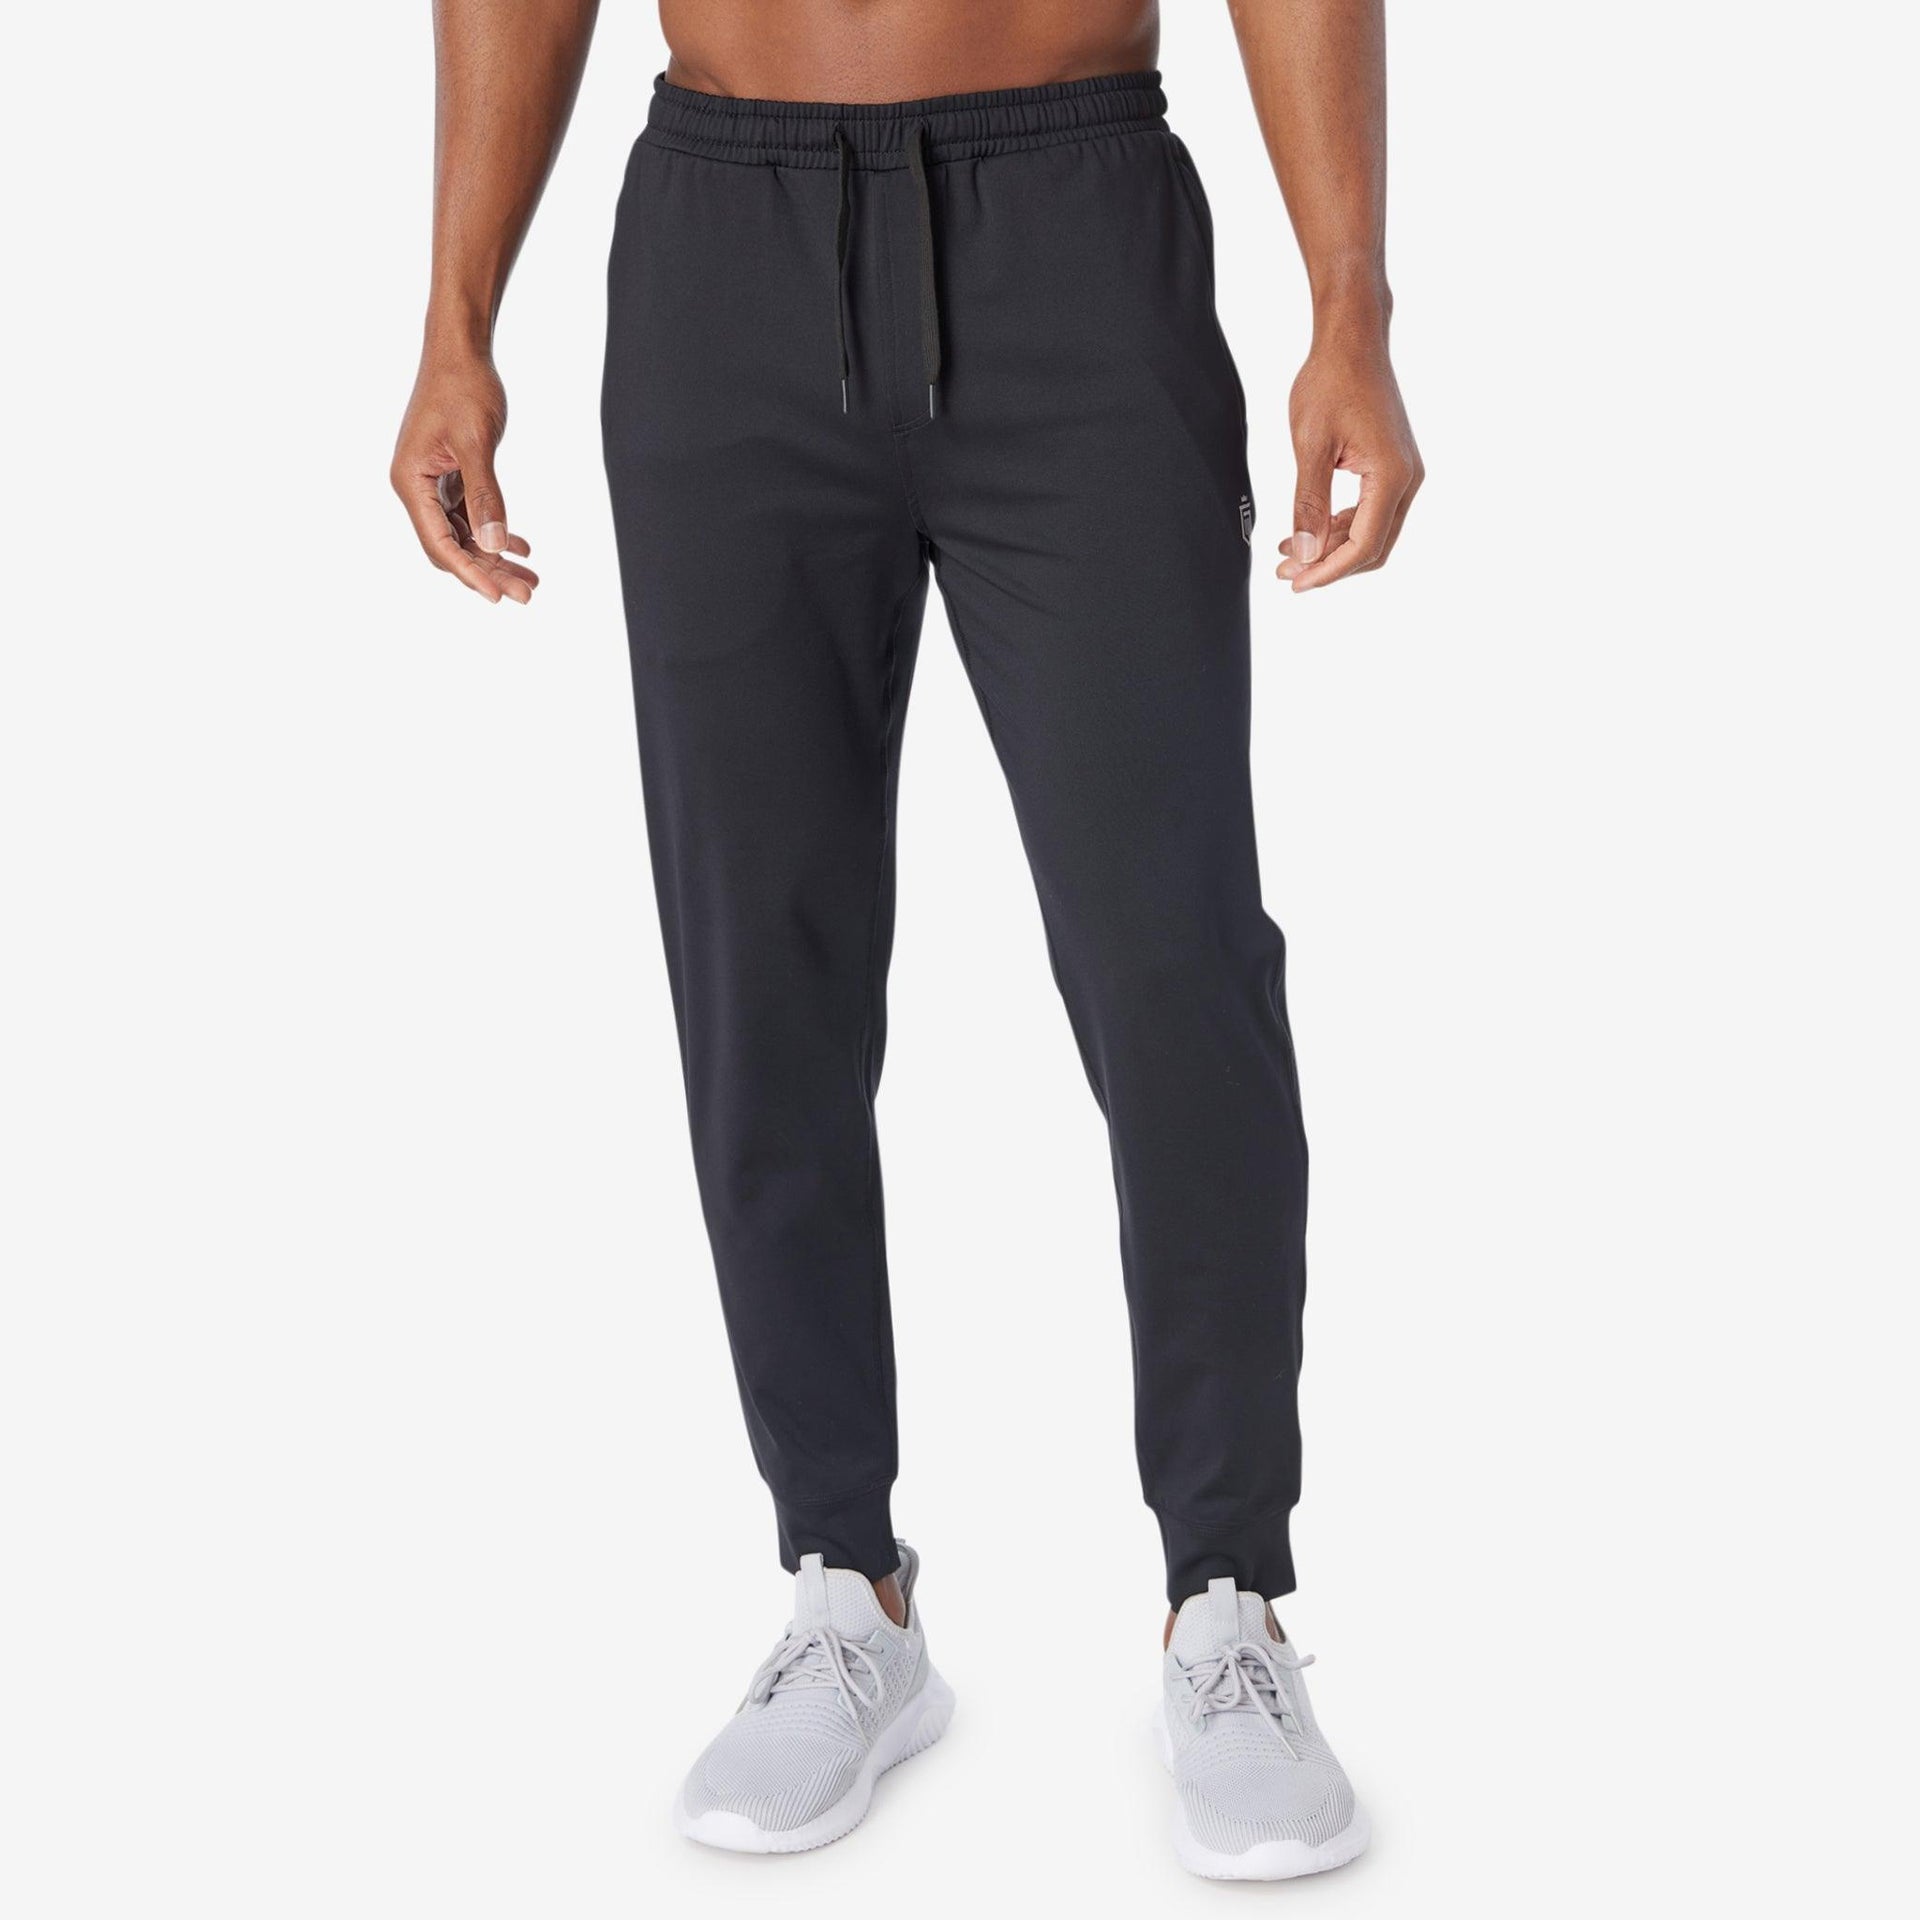 Hutch Designer Mens Slim Fit Zip Bottoms Joggers Sweat Pants Jogging Gym  Trouser